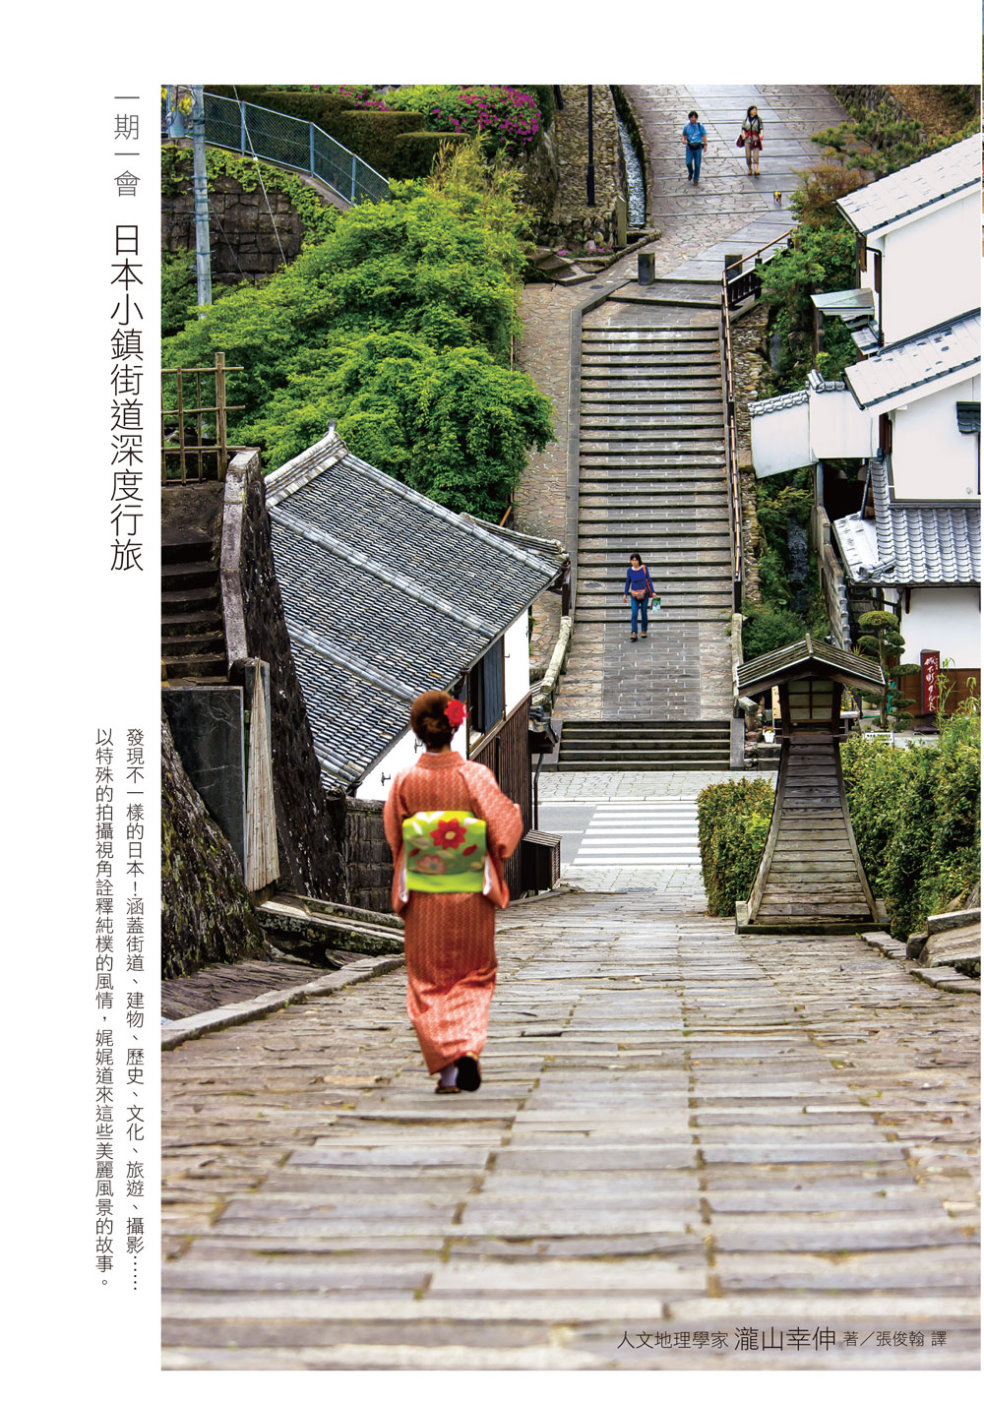 一期一會 日本小鎮街道深度行旅：造訪未知的祕境，看見不一樣的...